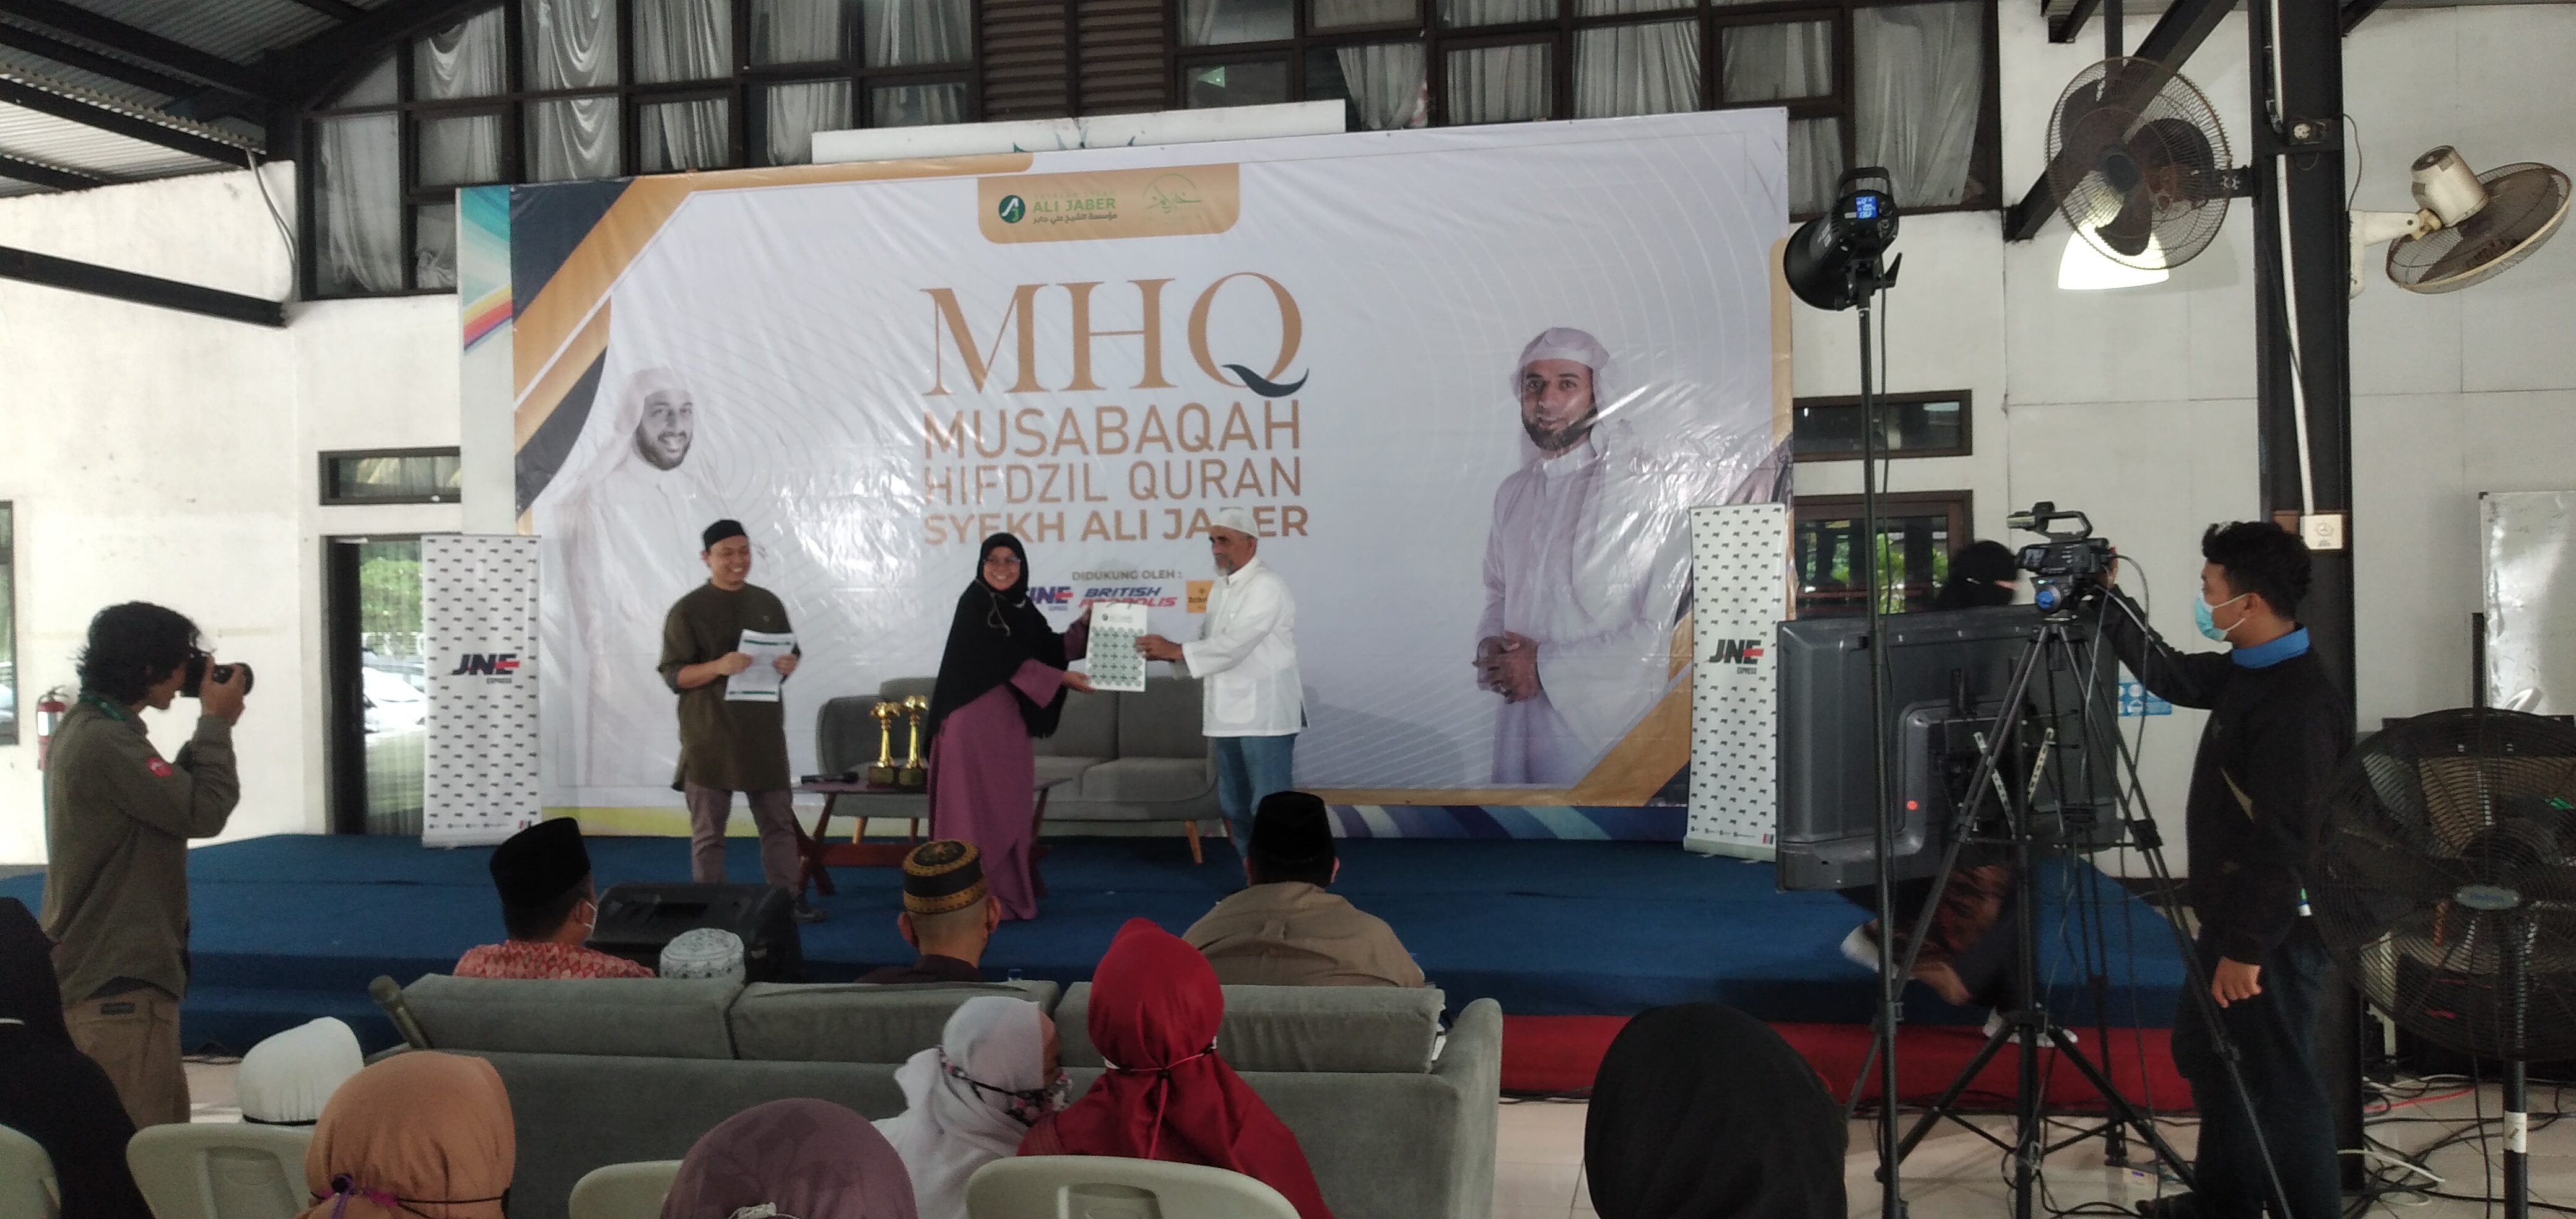 Yayasan Syekh Ali Jaber Adakan Musabaqah Hifdzil Quran untuk Wujudkan 1 Juta Hafidz